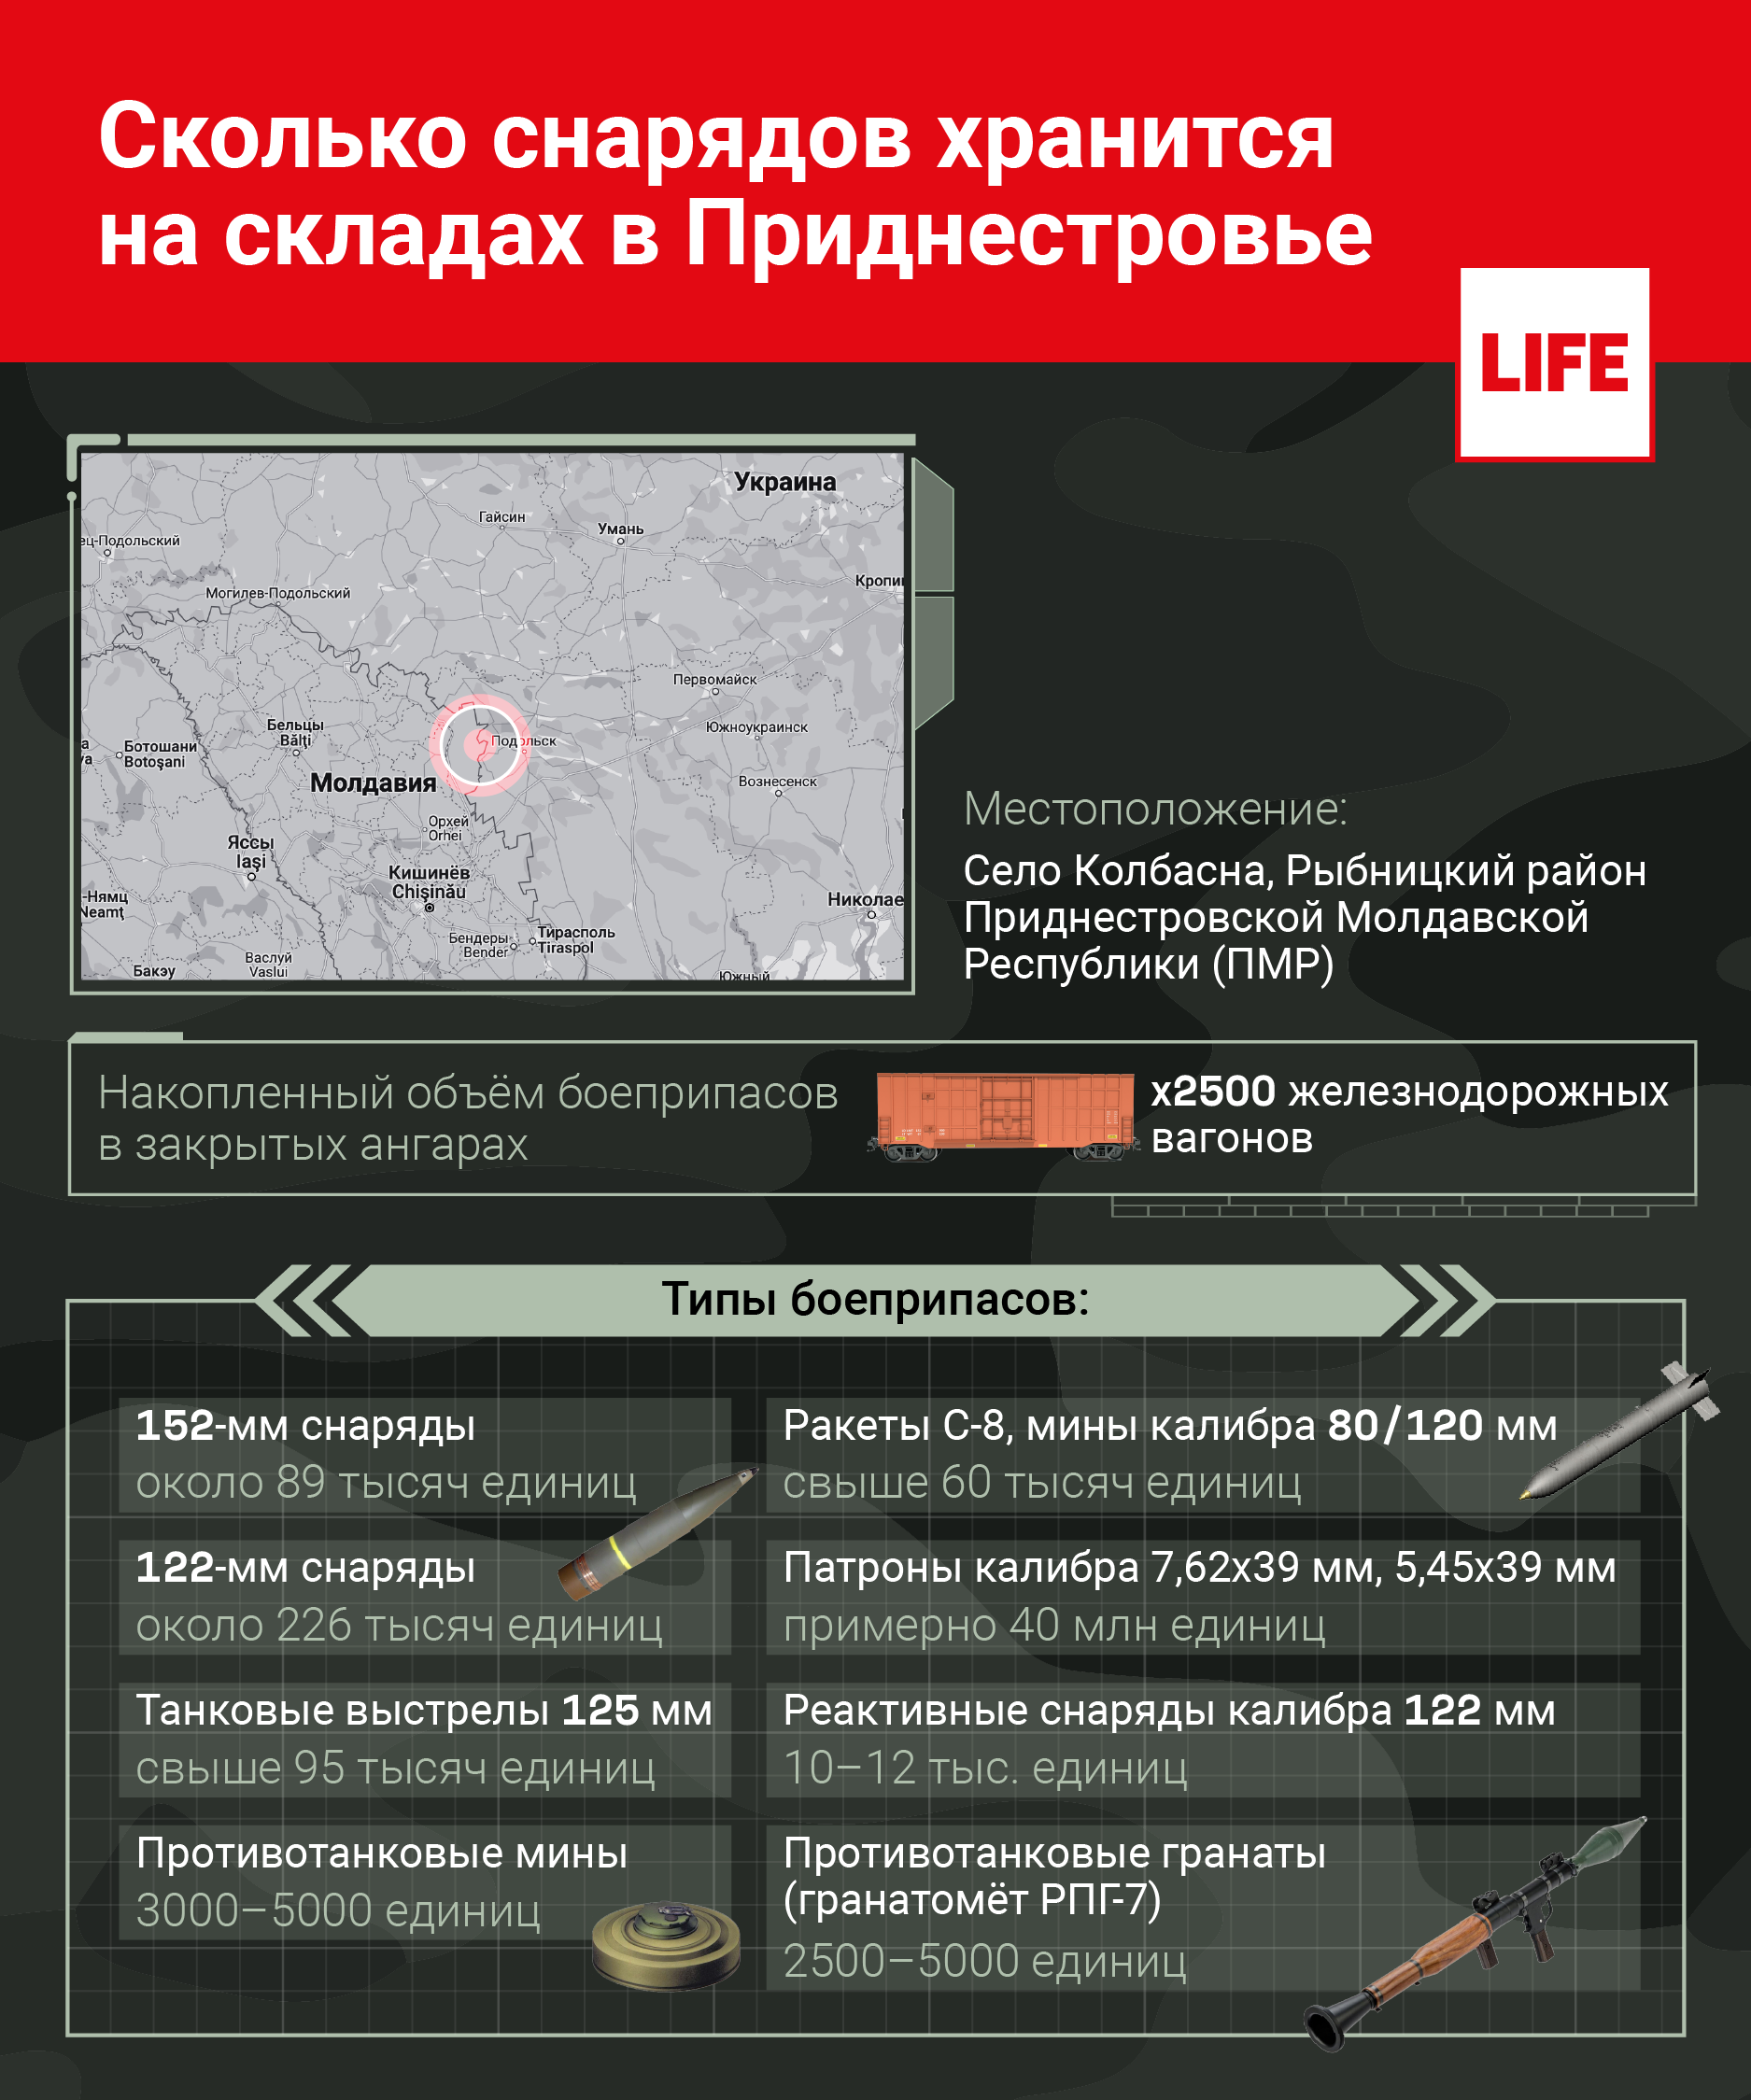 Какие снаряды находятся на складах в Приднестровье? © Инфографика LIFE